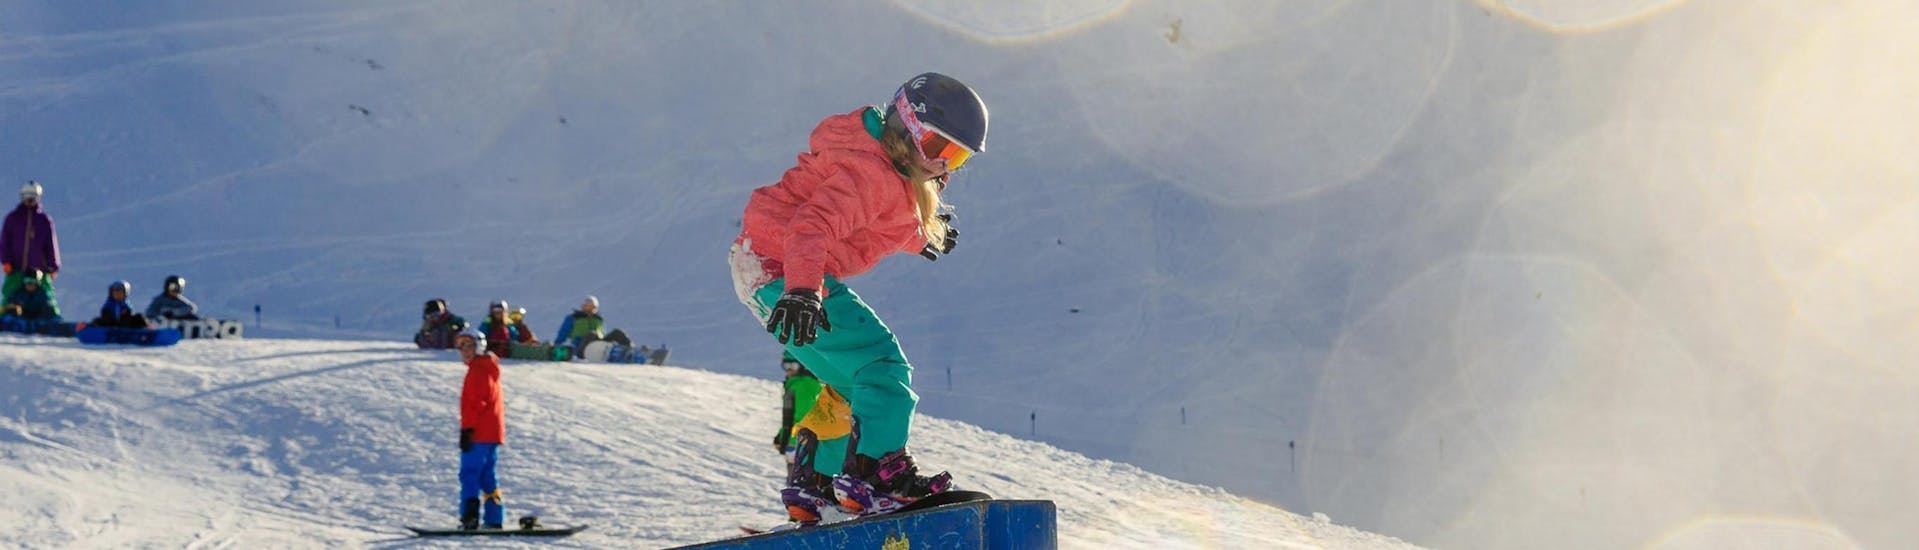 Clases de snowboard a partir de 7 años para todos los niveles con Ski School ESKIMOS Saas-Fee.